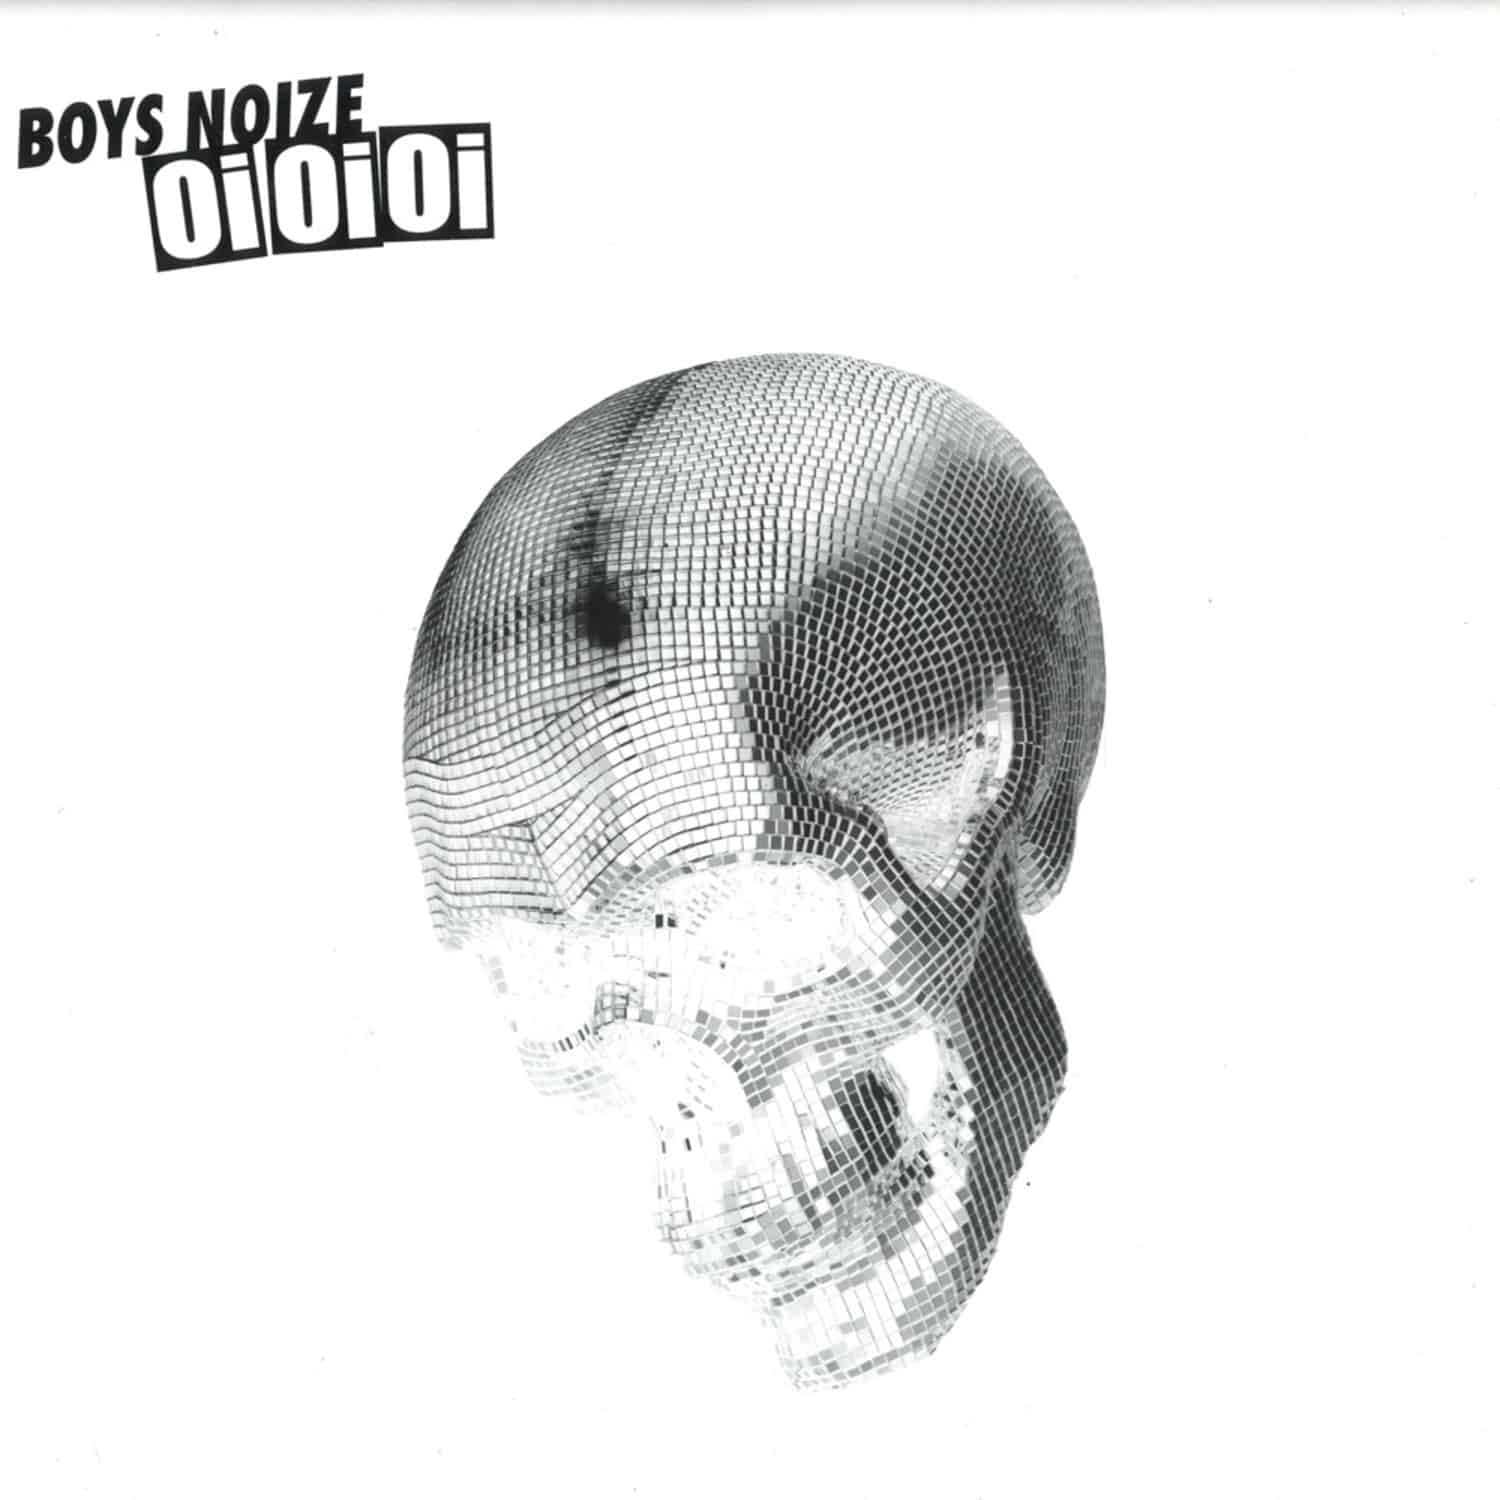 Boys Noize - Oi oi oi / Remixes by Boys Noize & Housemeister